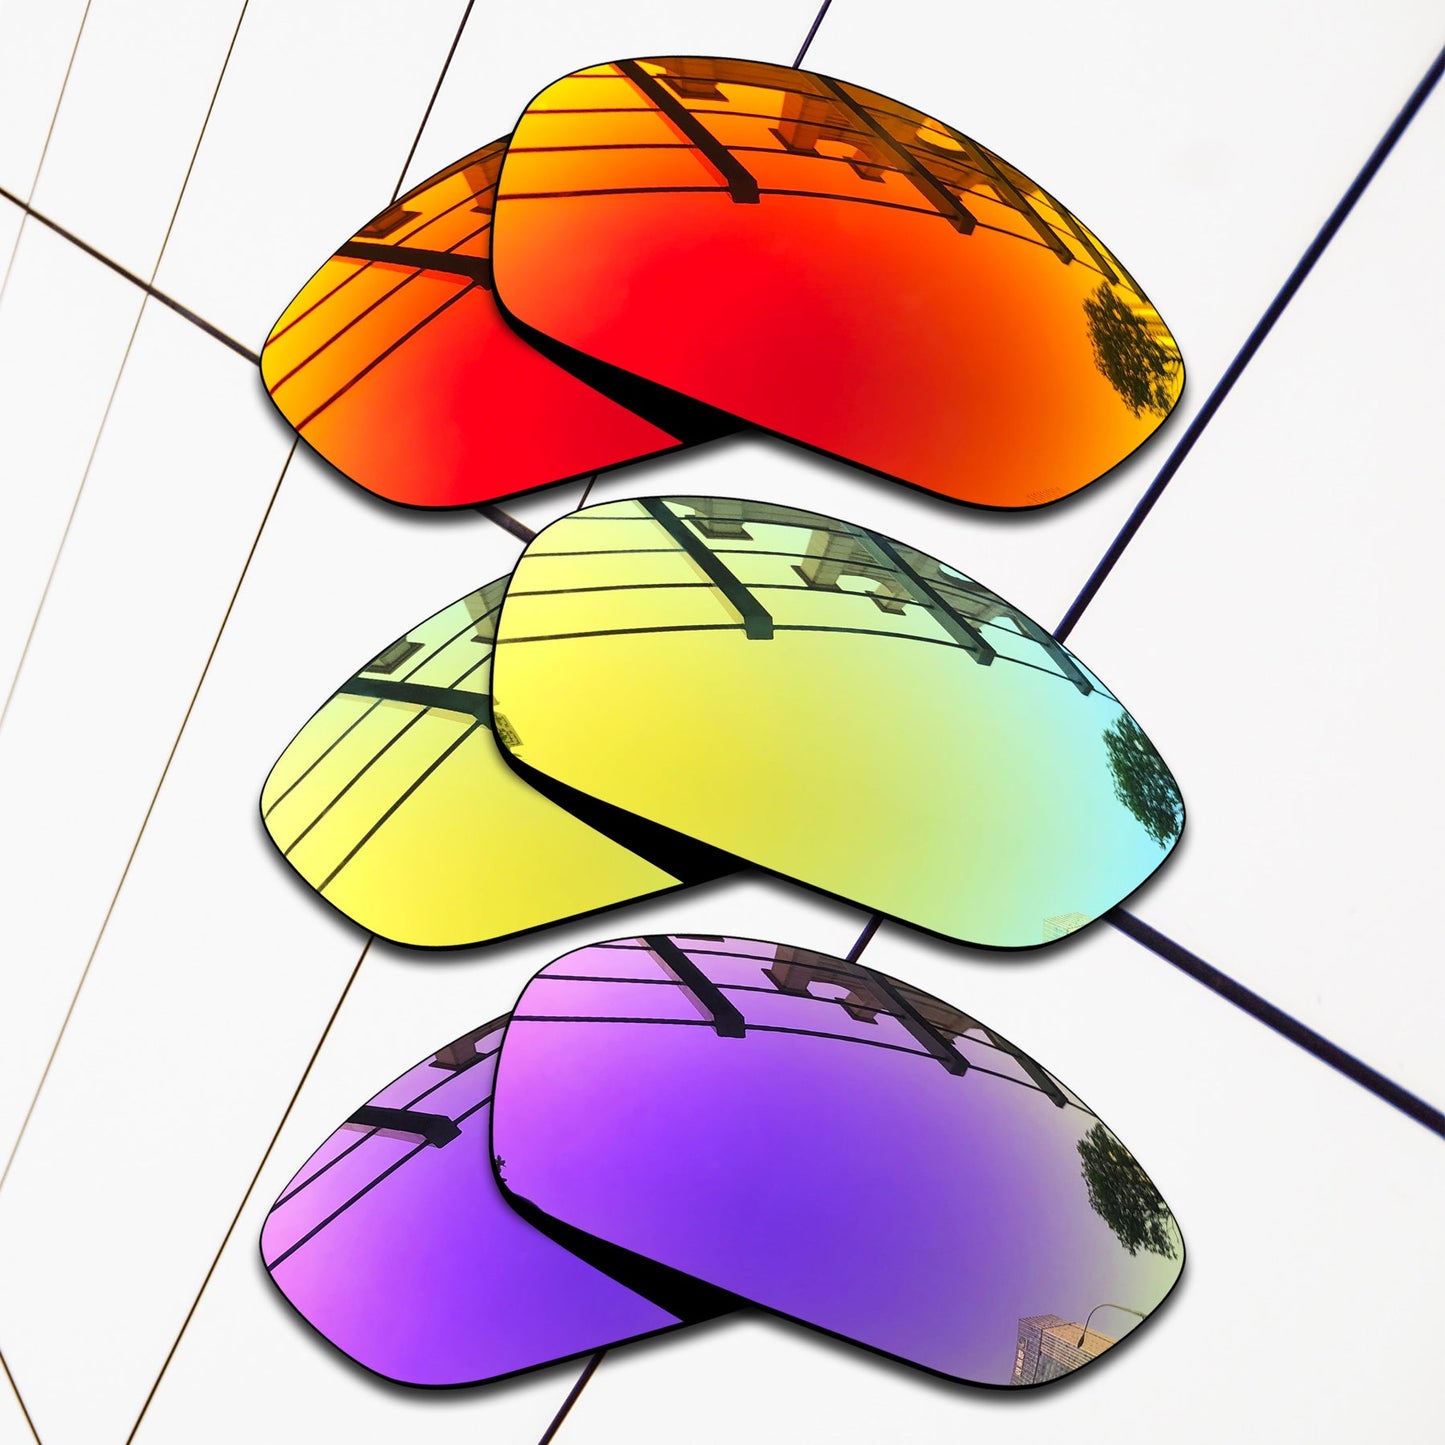 Polarized Replacement Lenses for Oakley Spilt Jacket Sunglasses